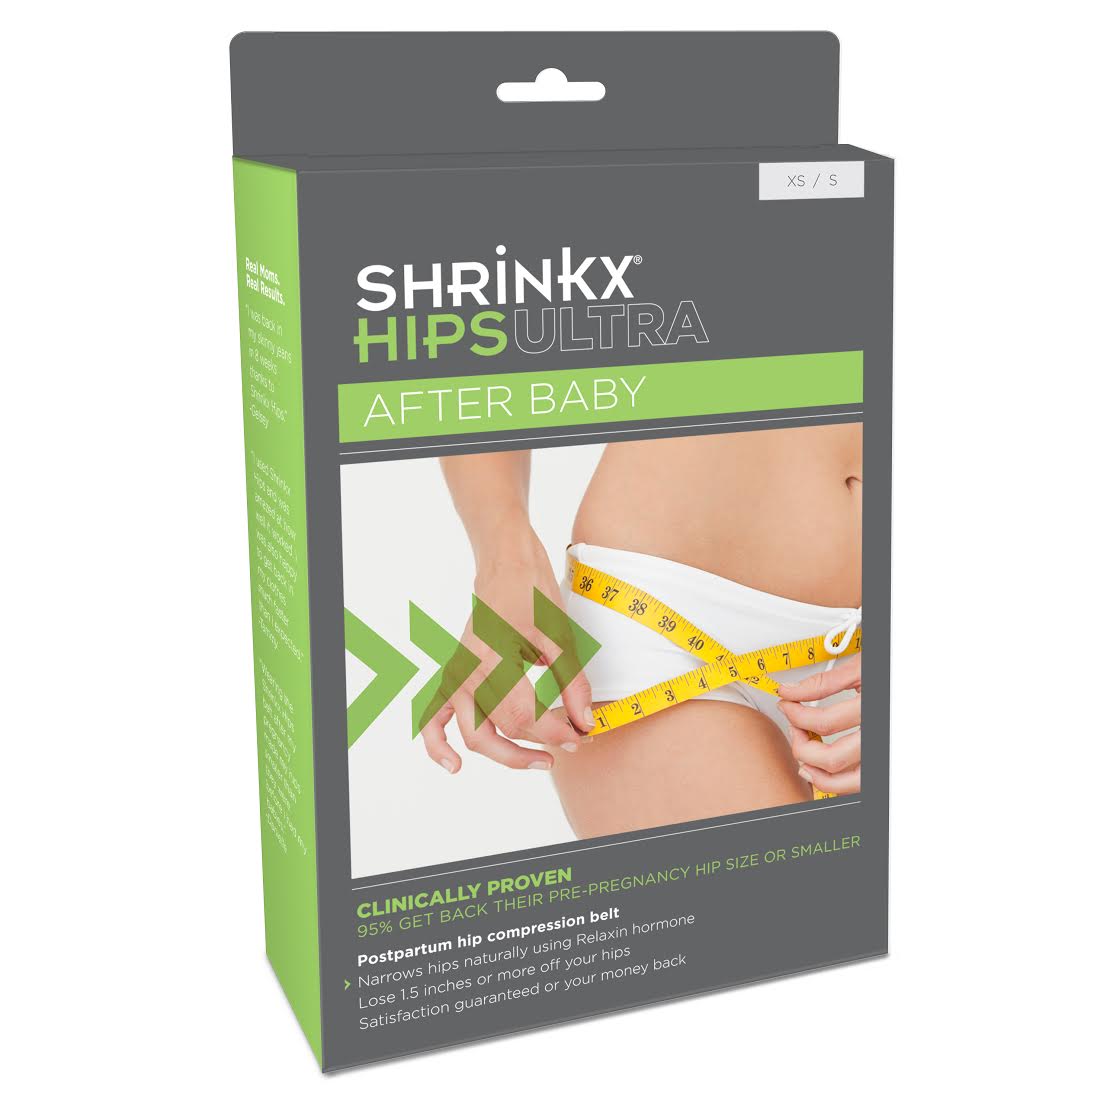 UpSpring Baby Shrinkx Hips Ultra Postpartum Hip Compression Belt